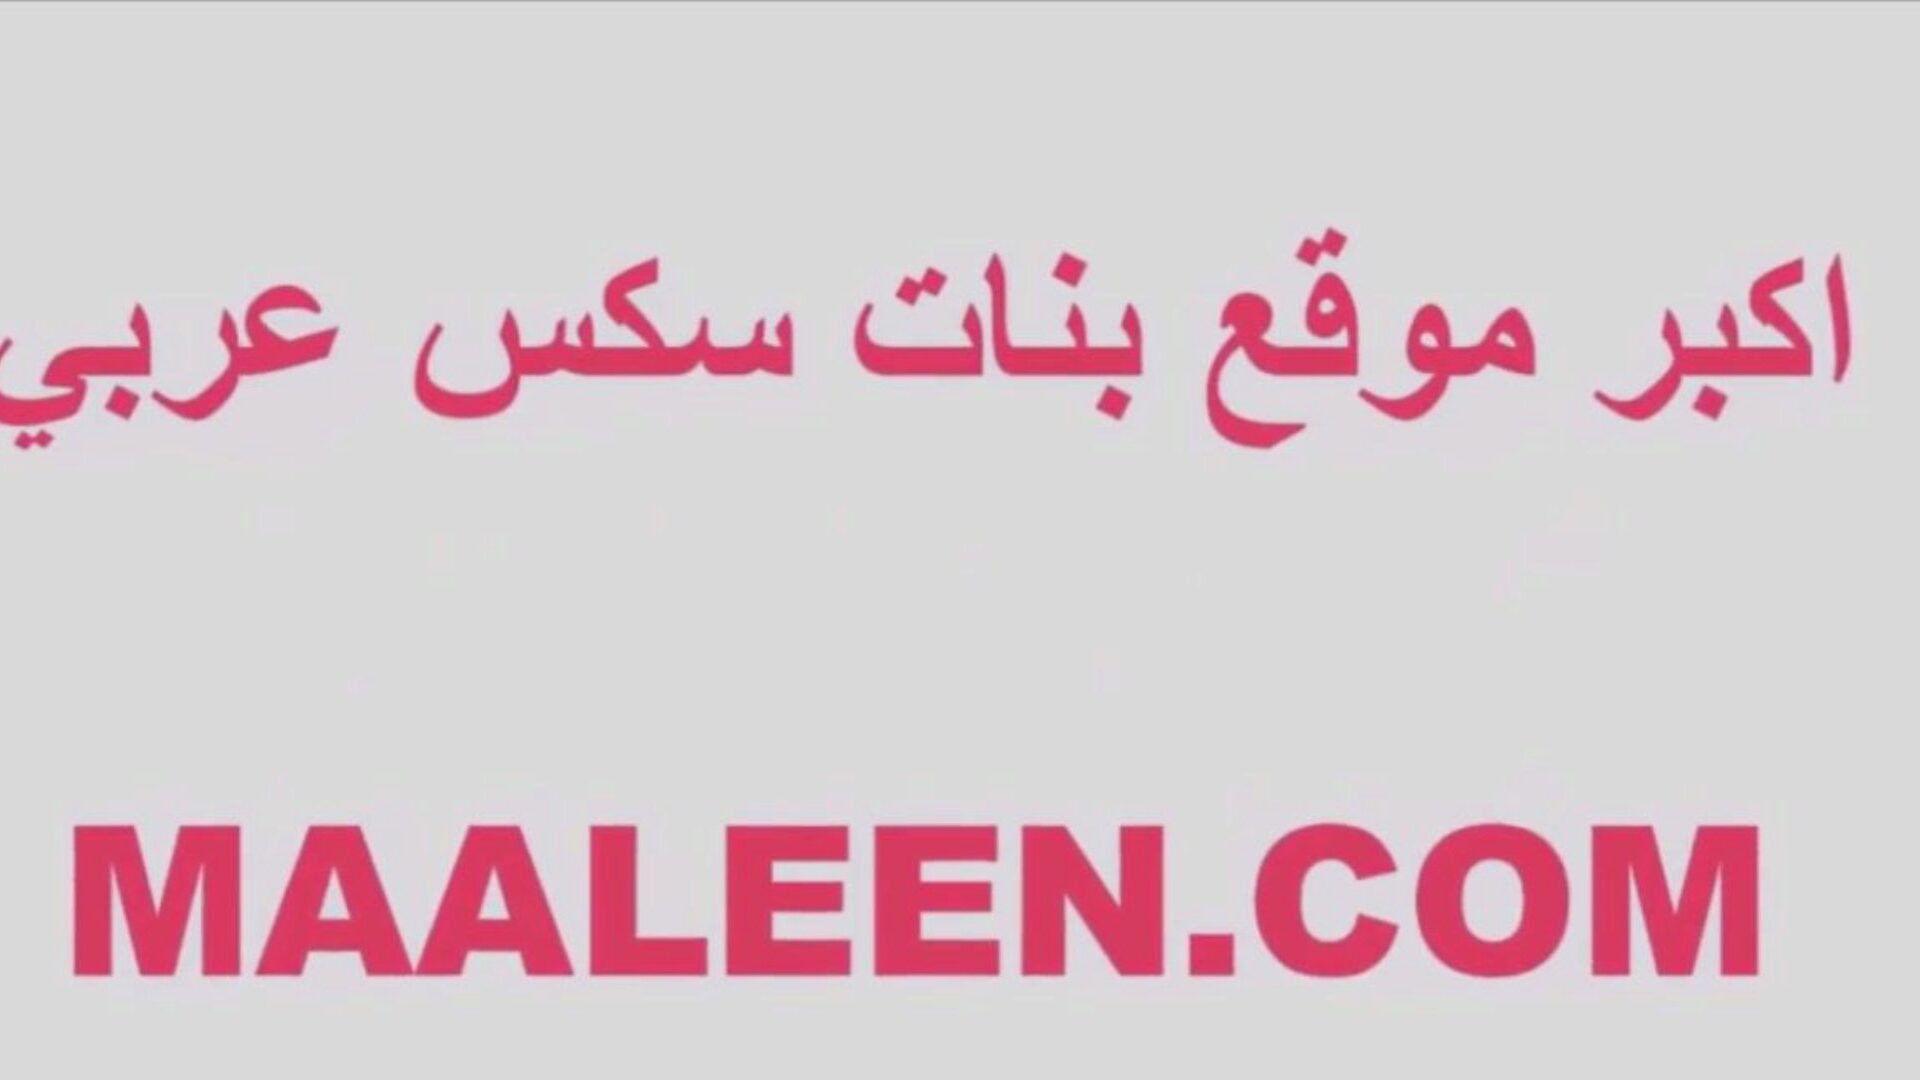 αραβικό σεξ μεγάλη όμορφη γυναίκα δωρεάν έφηβος βίντεο hd πορνό d8